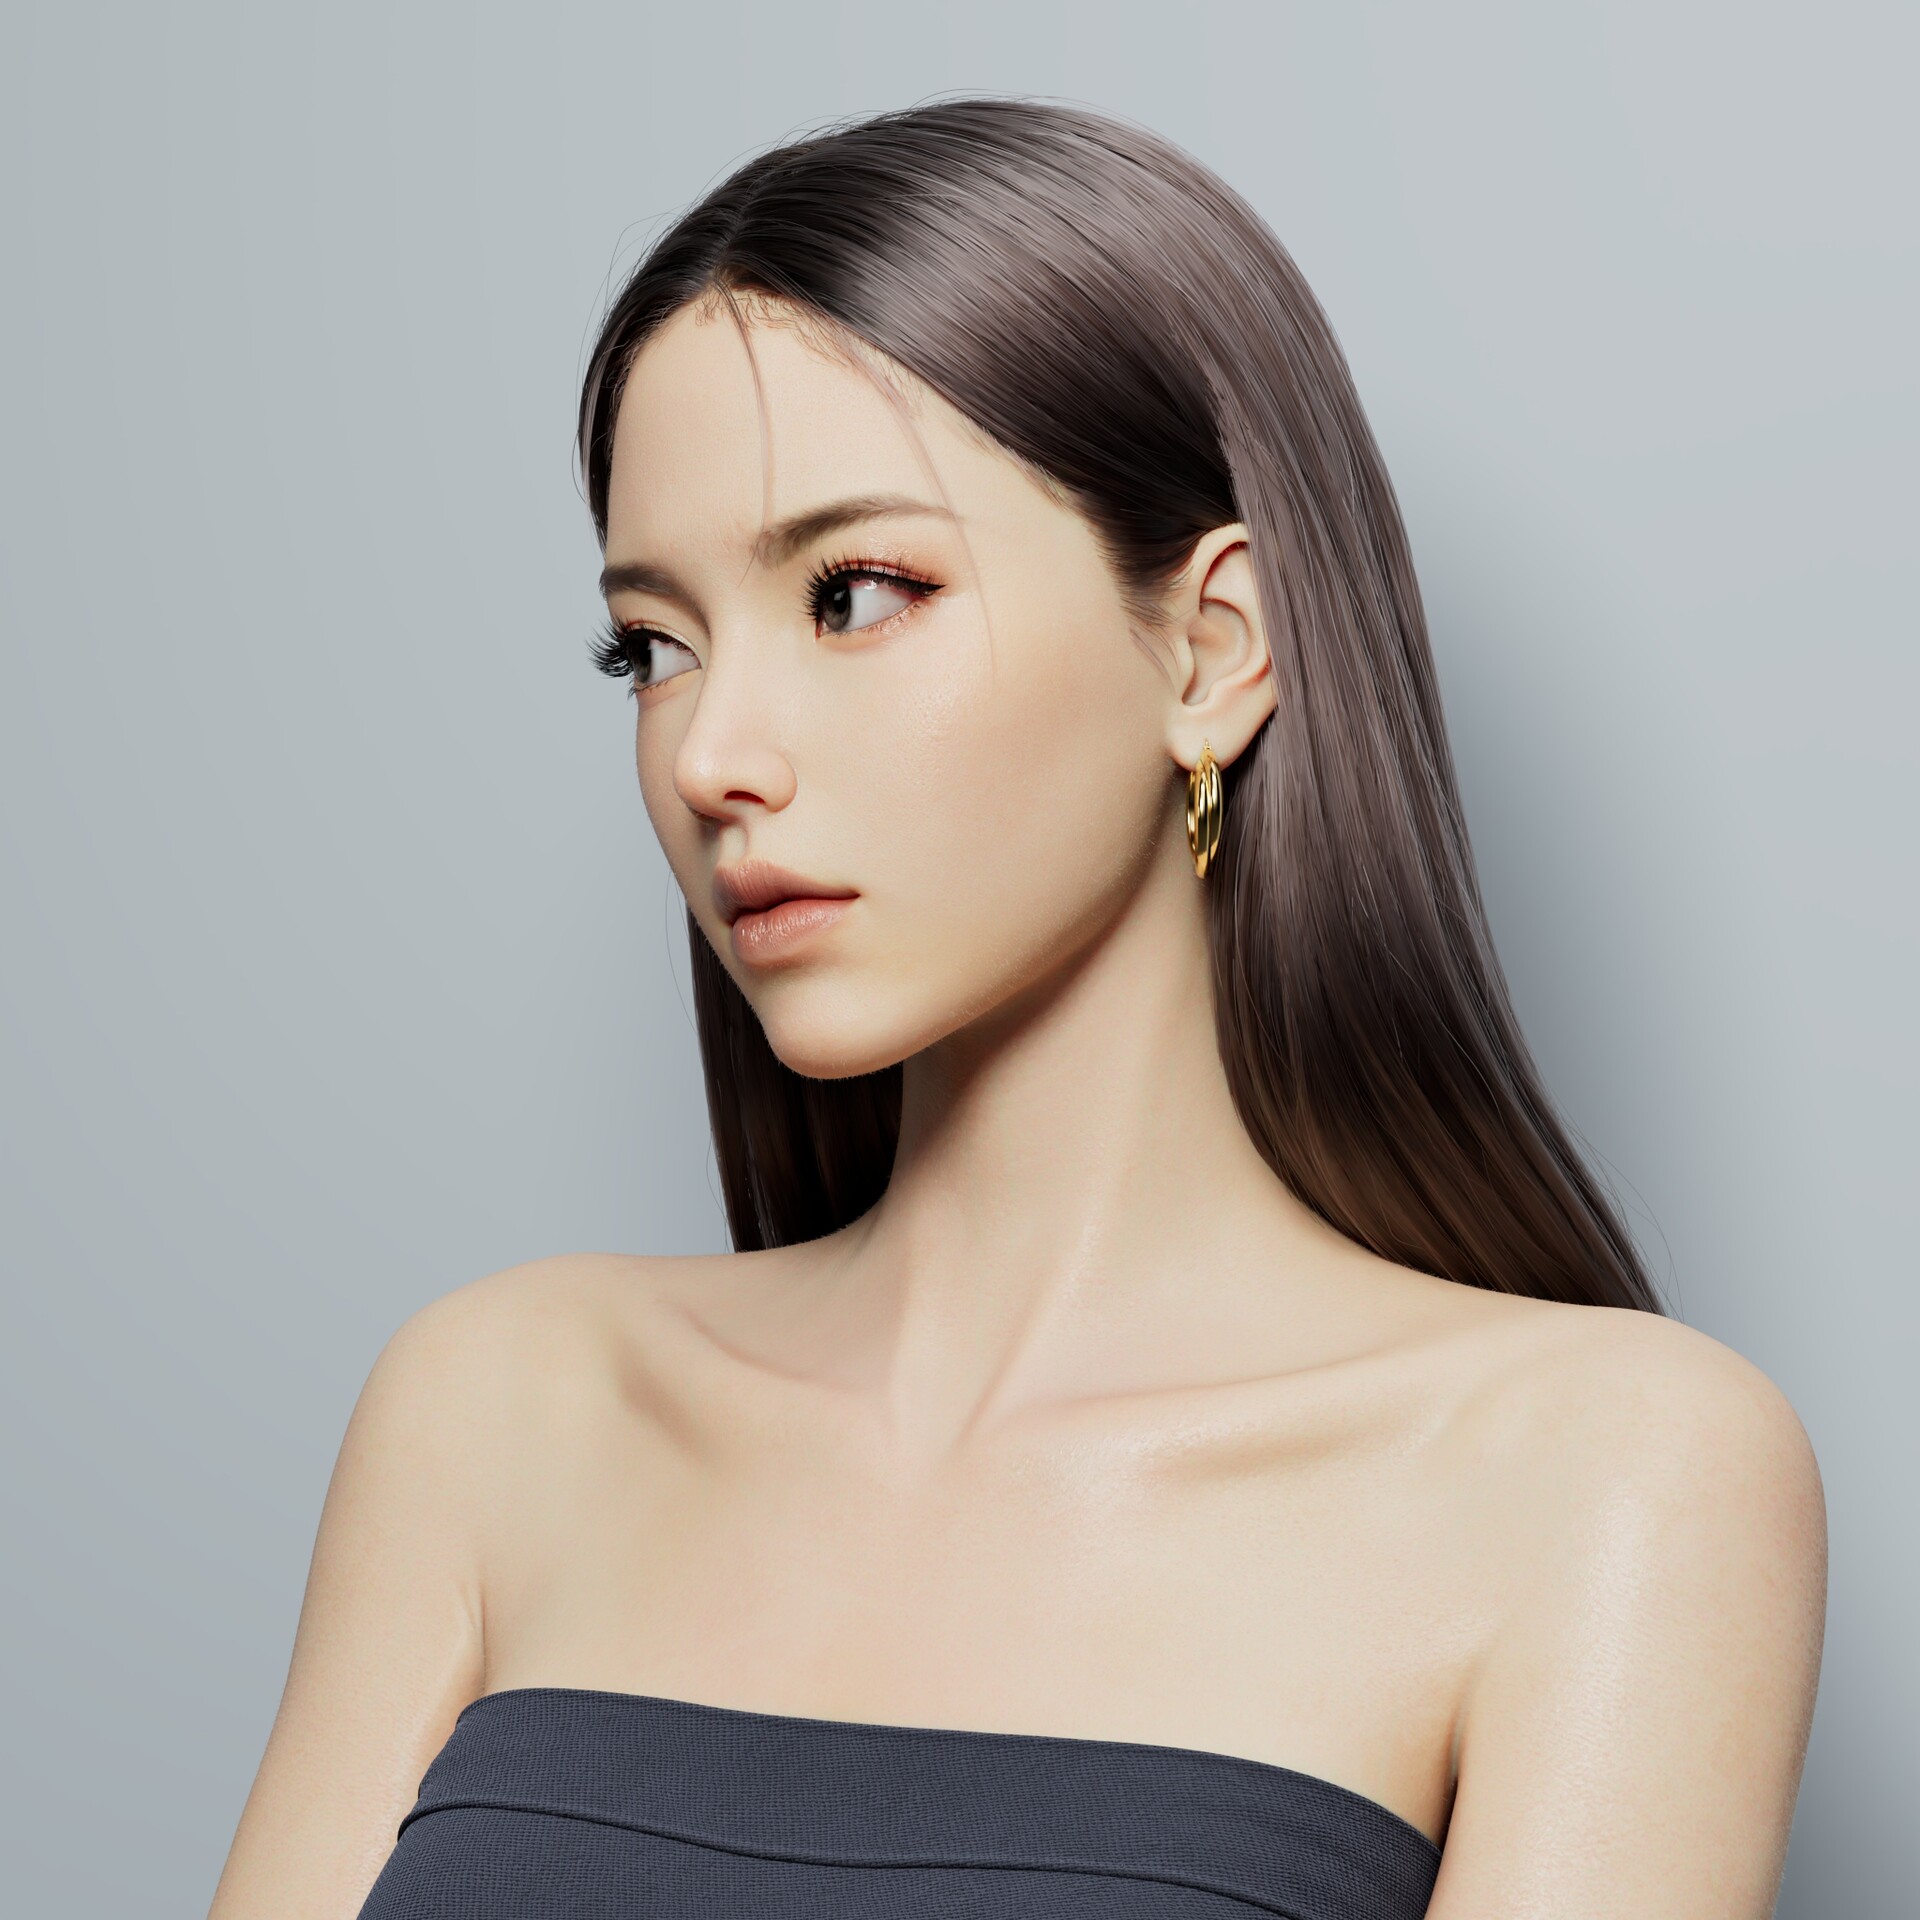 Ling Jie Zeng CGi Women Asian Portrait Brunette Straight Hair Earring Bare Shoulders Simple Backgrou 1920x1920